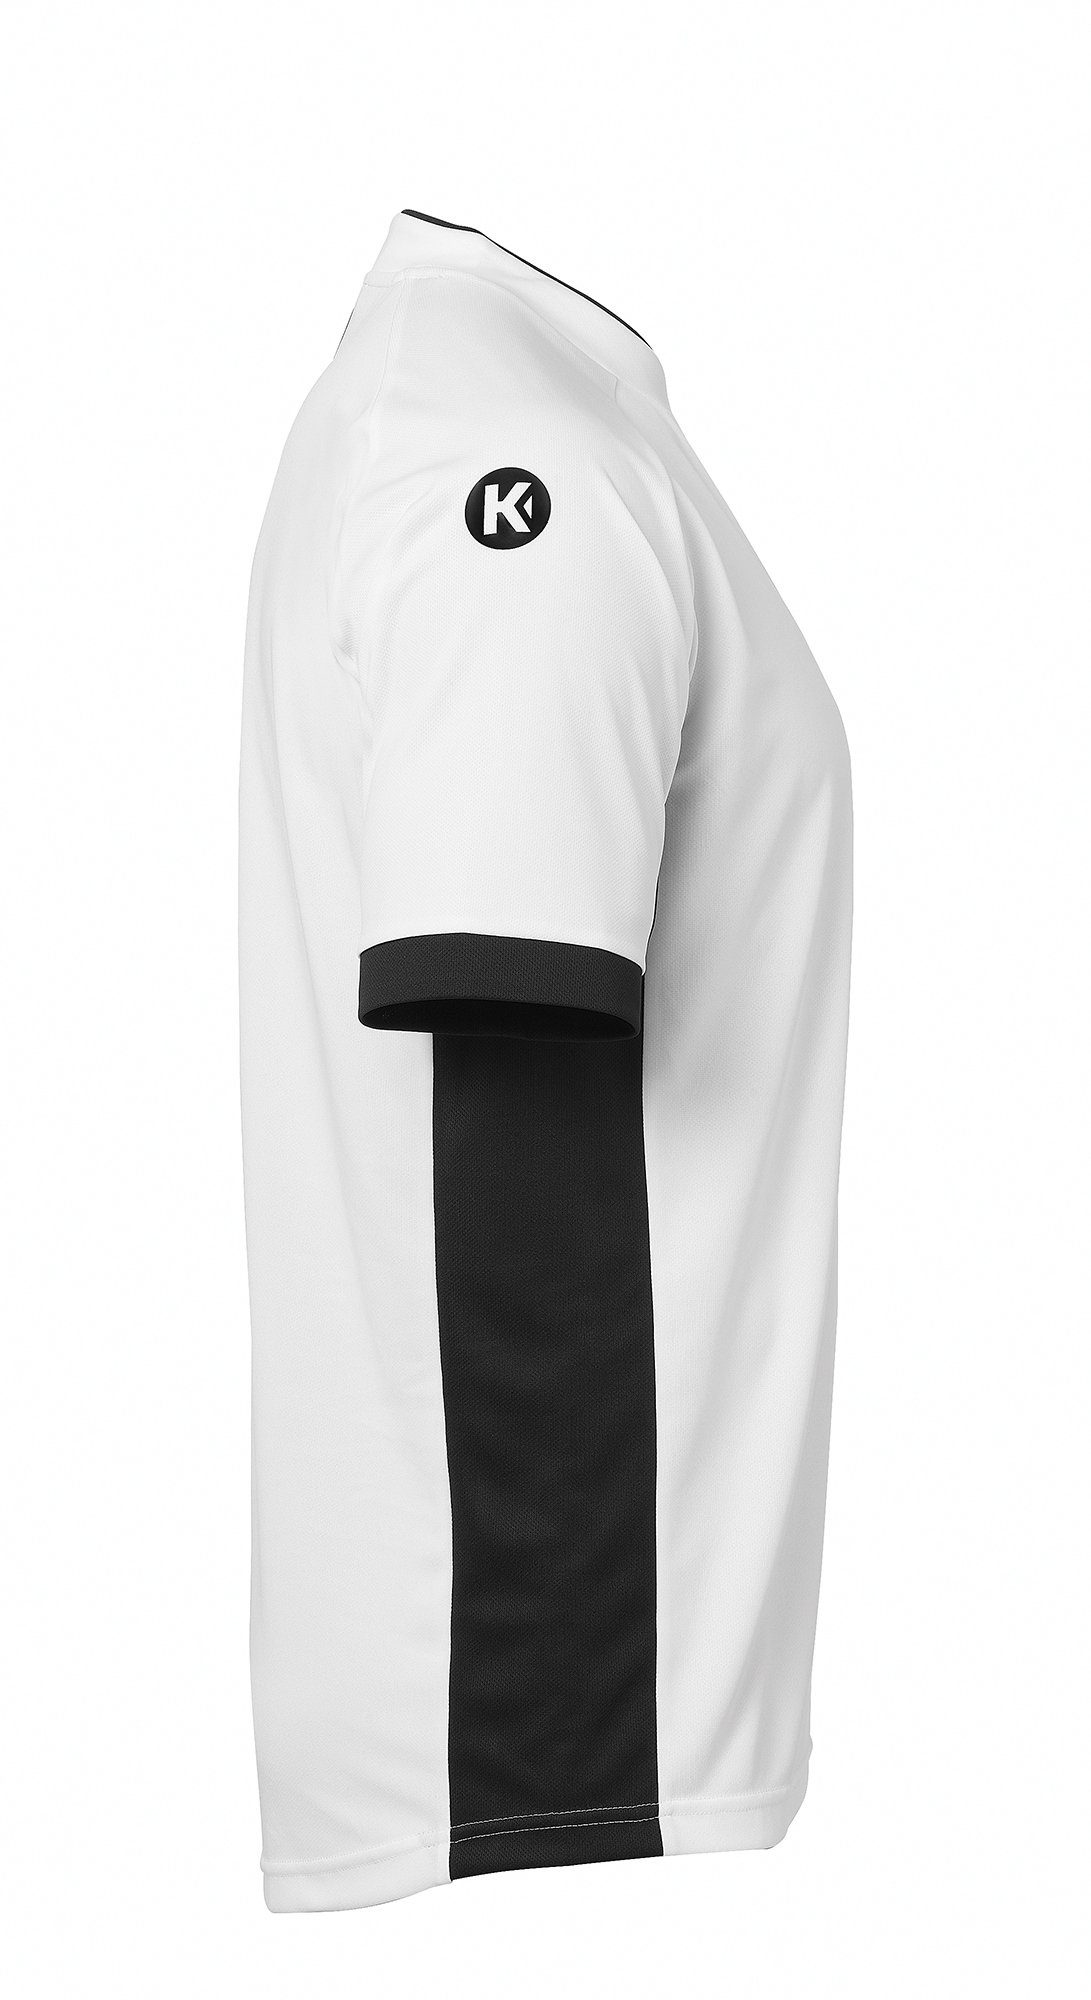 schnelltrocknend Kempa Shirt PRIME weiß/schwarz TRIKOT Kempa Trainingsshirt